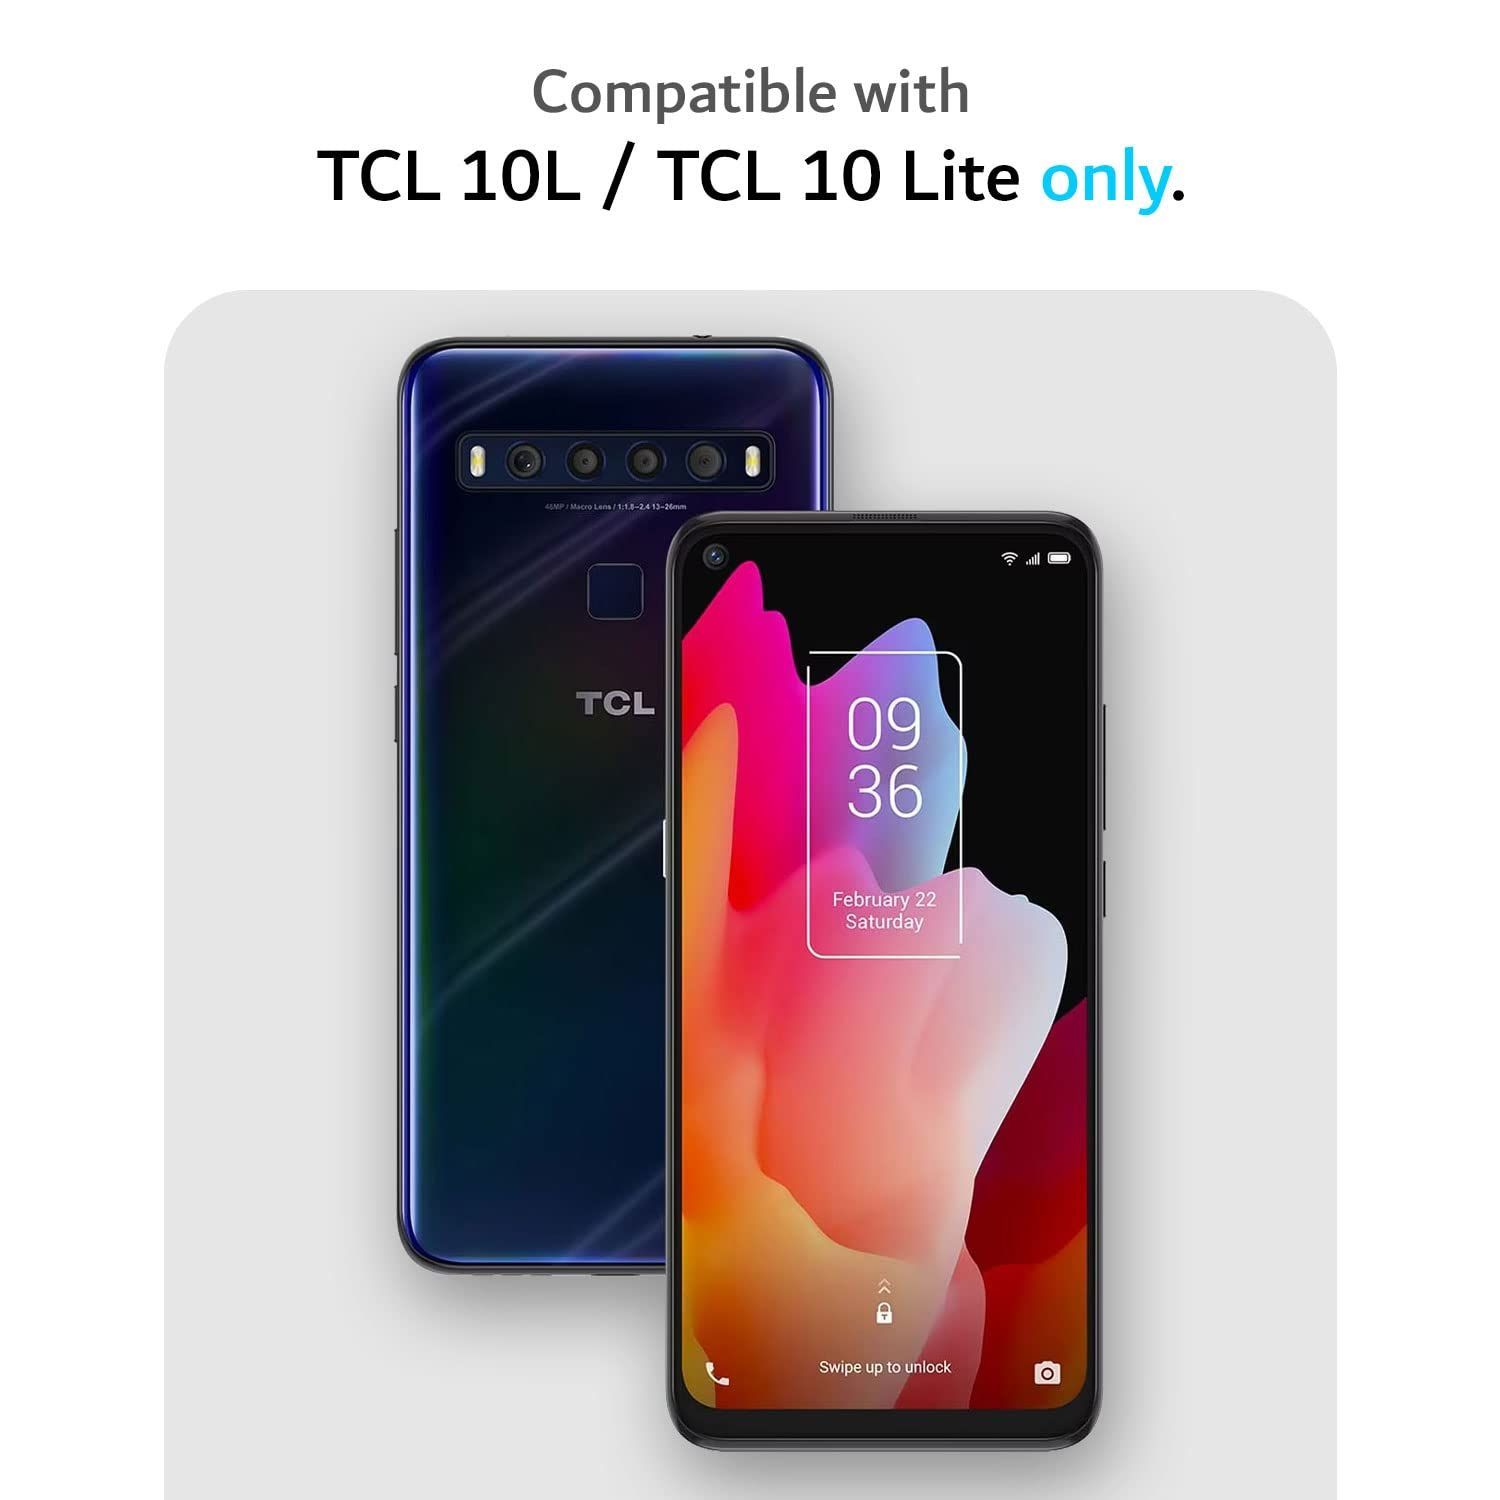 TCL-10 Lite